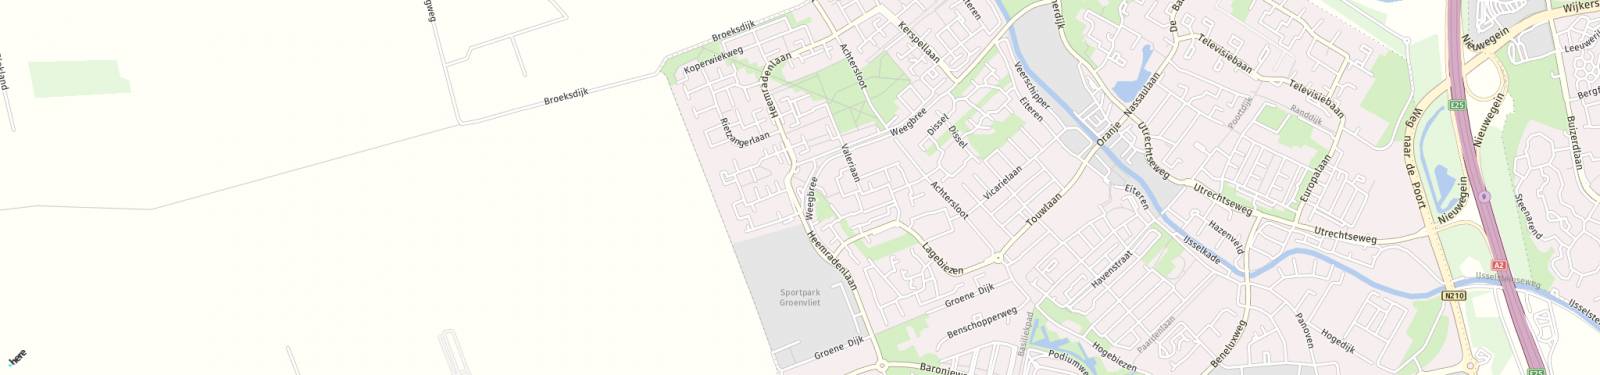 Kaart met locatie Studio Kruidenierweg